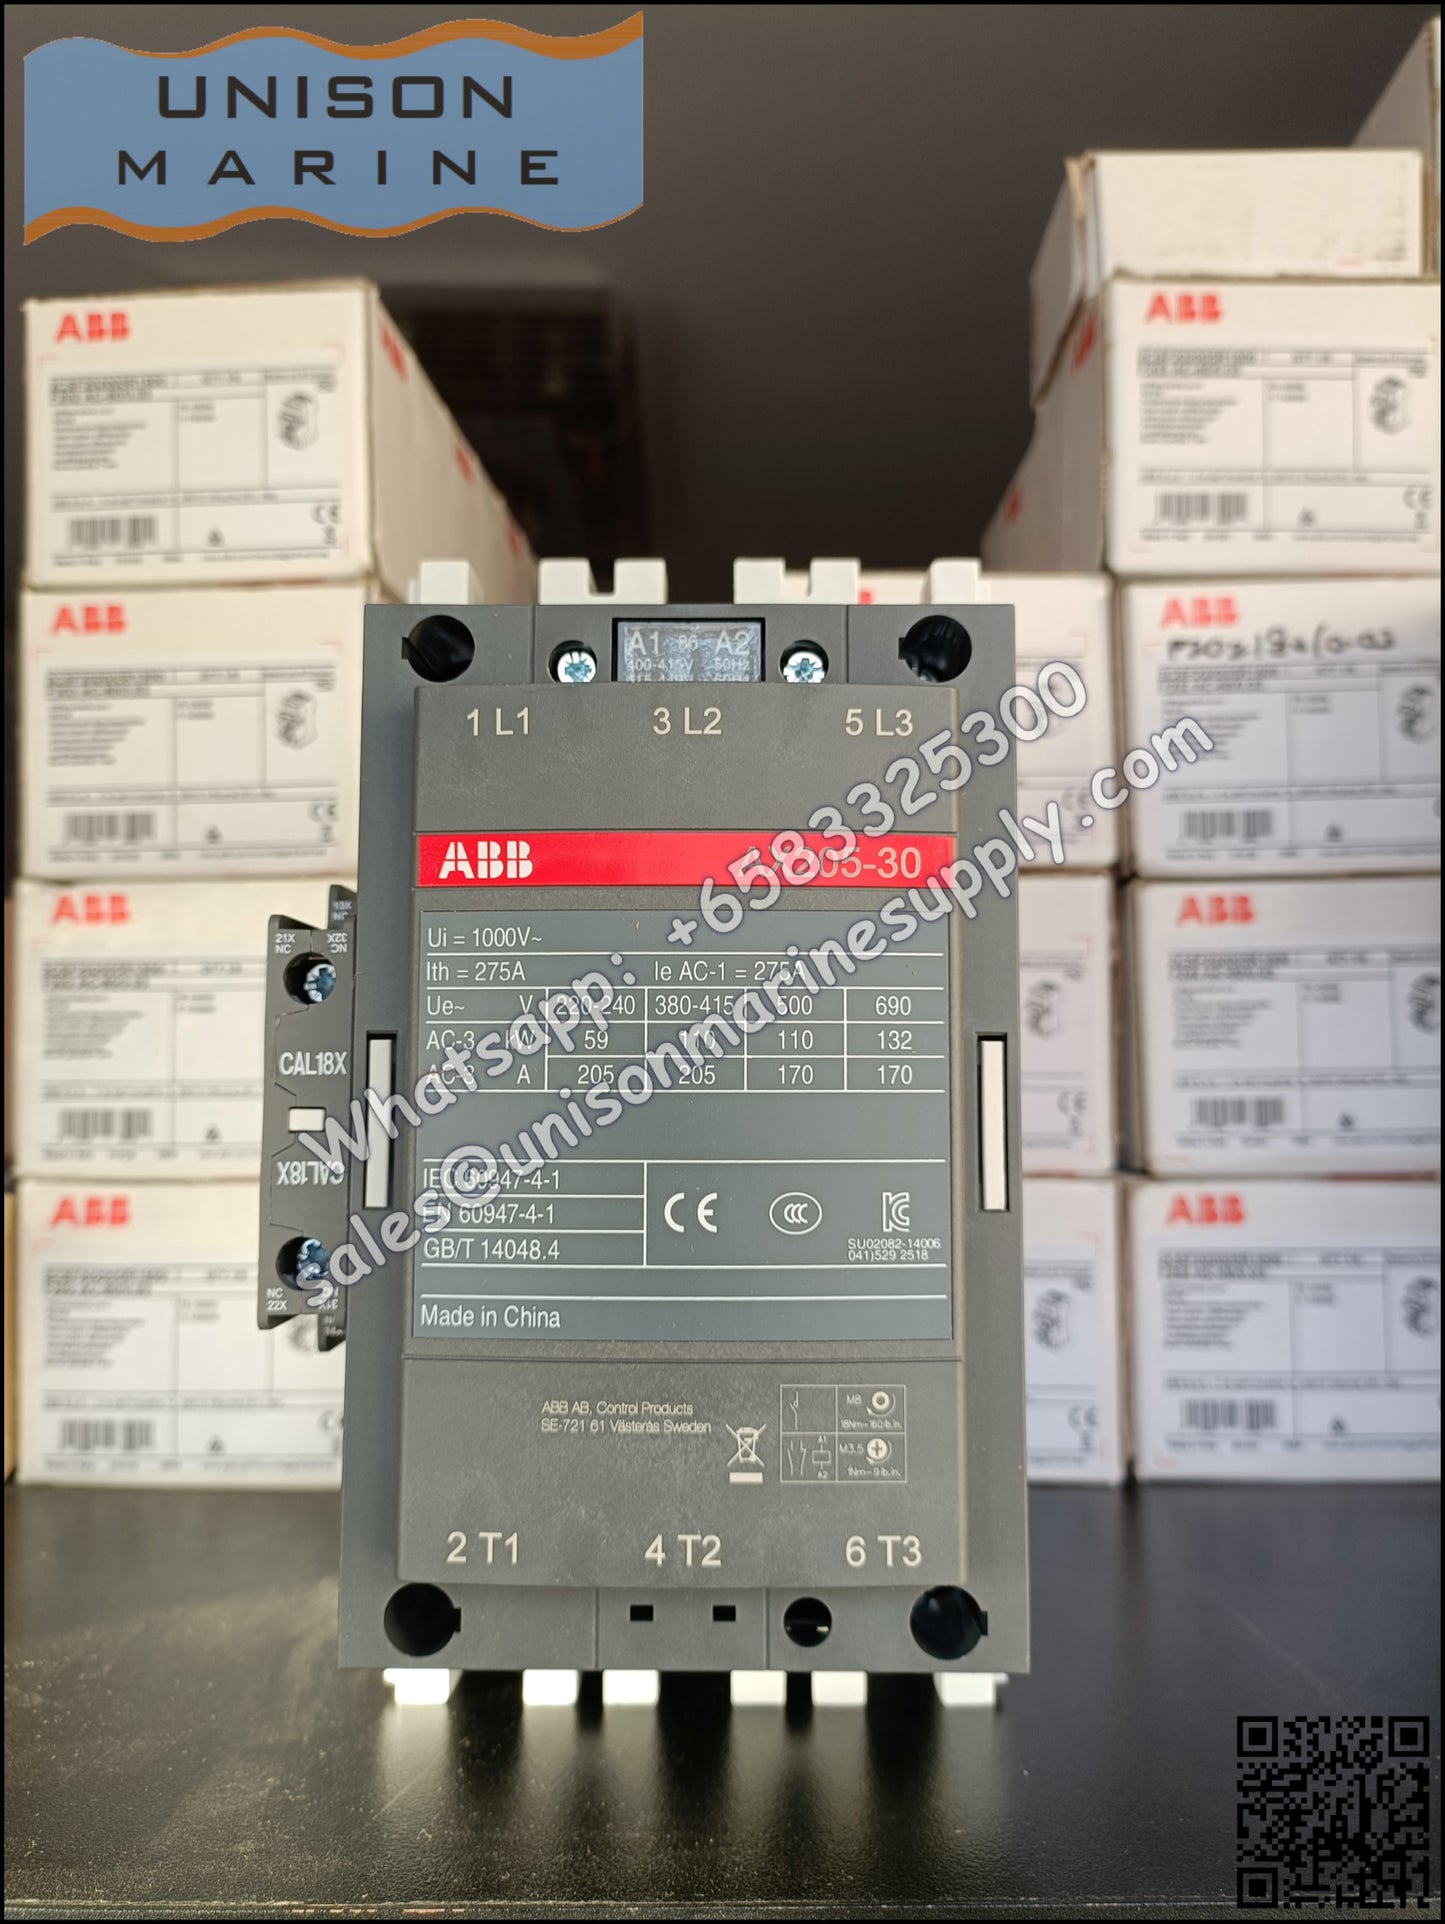 ABB Magnetic Contactors AX Series : AX205-30-11